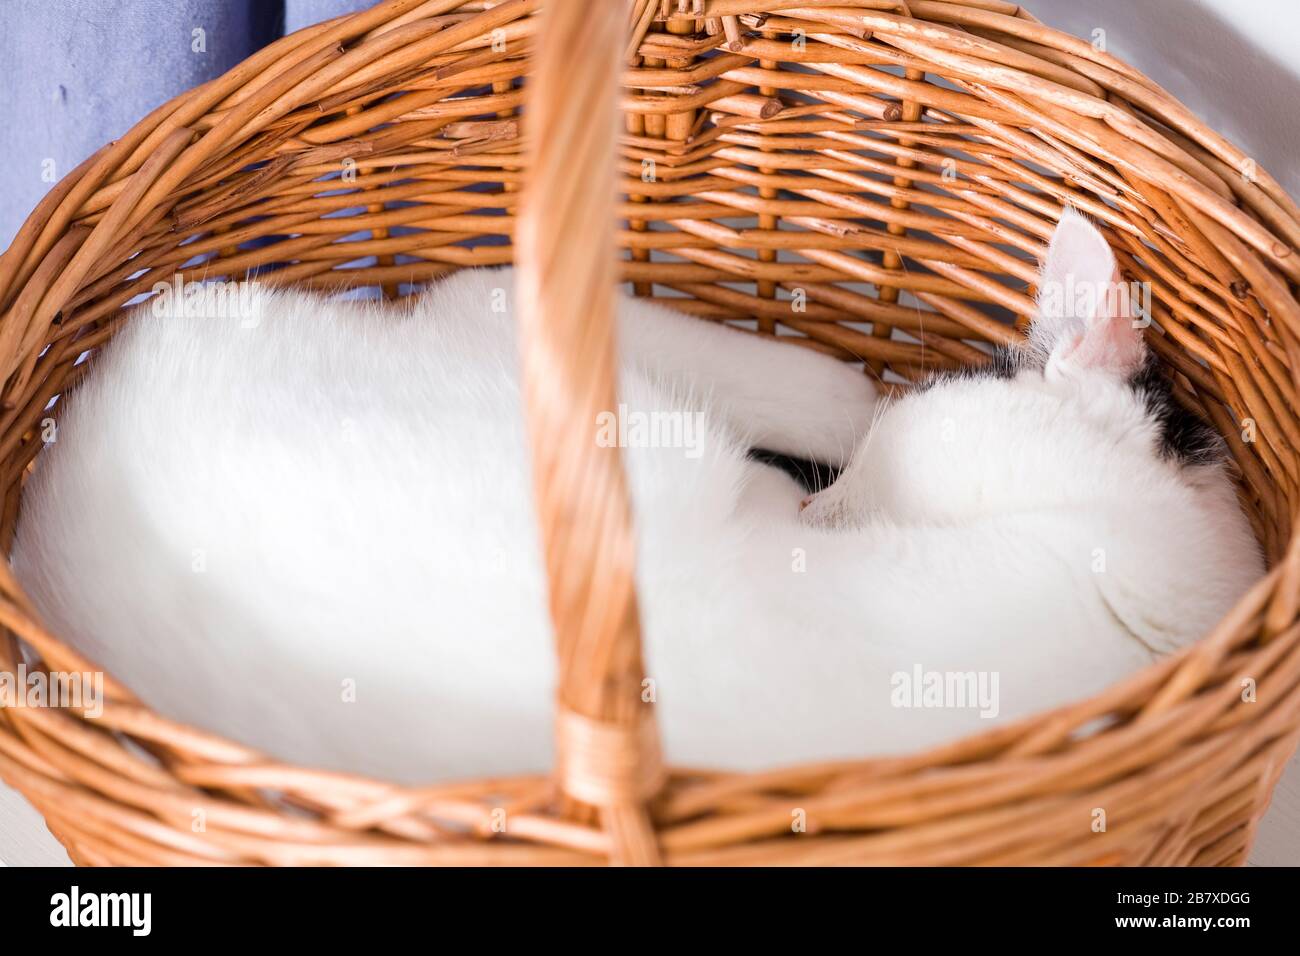 Un chat noir et blanc (Felis catus) s'endormit rapidement dans un baker en osier Banque D'Images